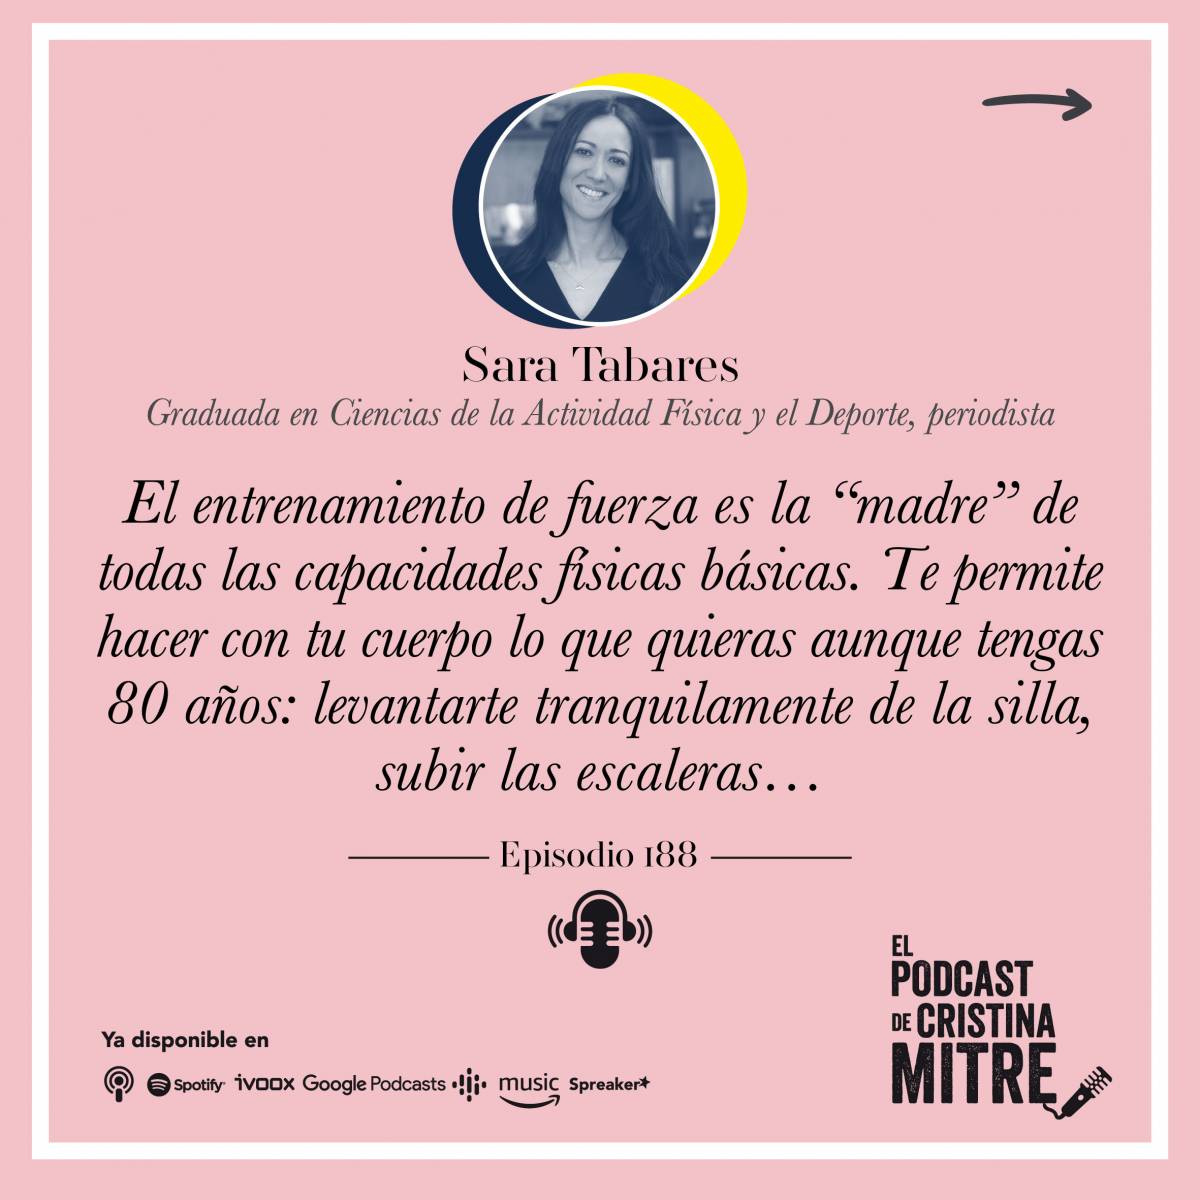 El podcast de Cristina Mitre Sara Tabares Fuerza